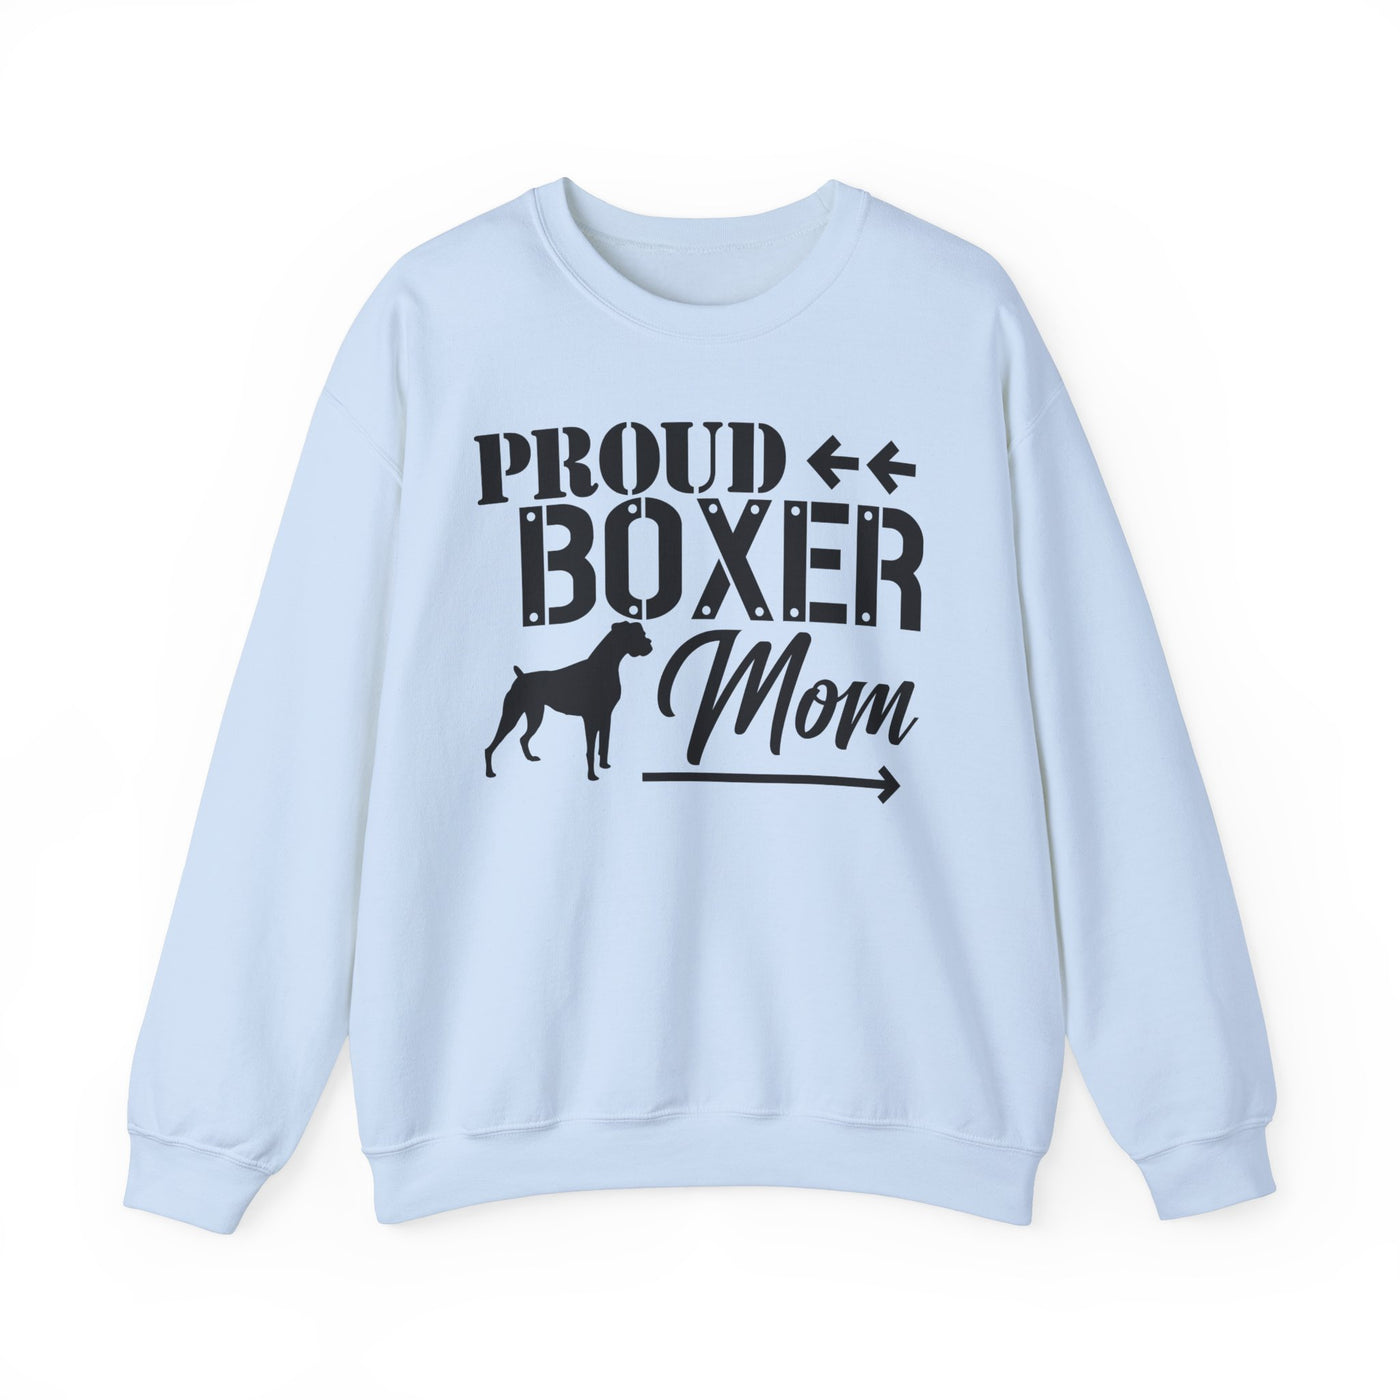 Proud Boxer Mom Sweatshirt